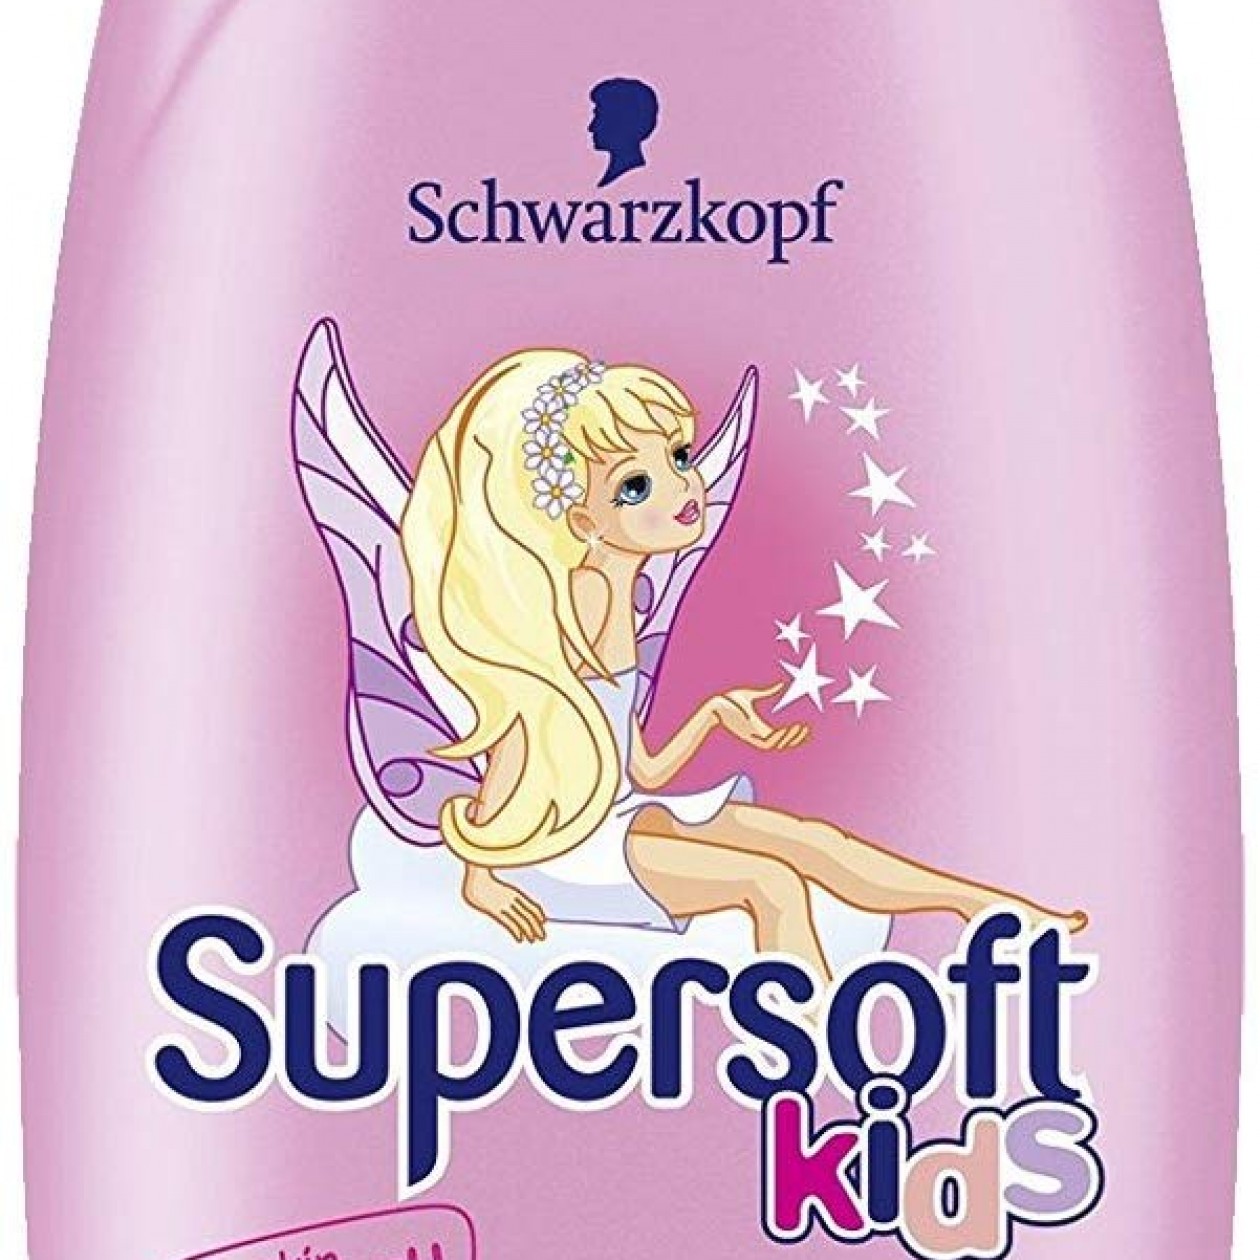 Schwarzkopf Supersoft Kids Girls Shampoo